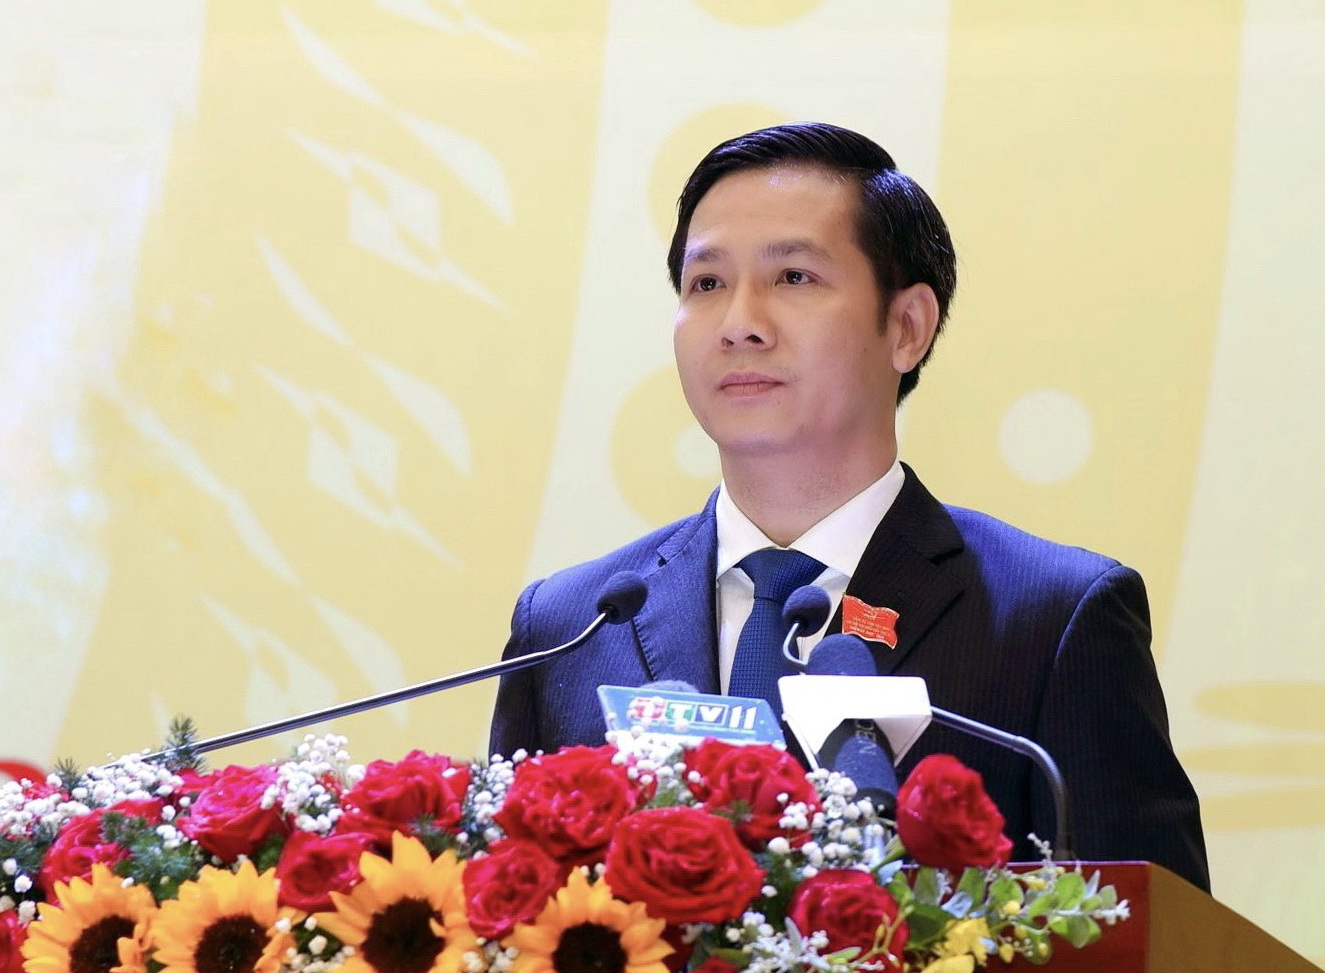 ồng chí Nguyễn Thành Tâm tái đắc cử Bí thư Tỉnh uỷ Tây Ninh nhiệm kỳ 2020-2025. (Ảnh: Báo Tây Ninh)